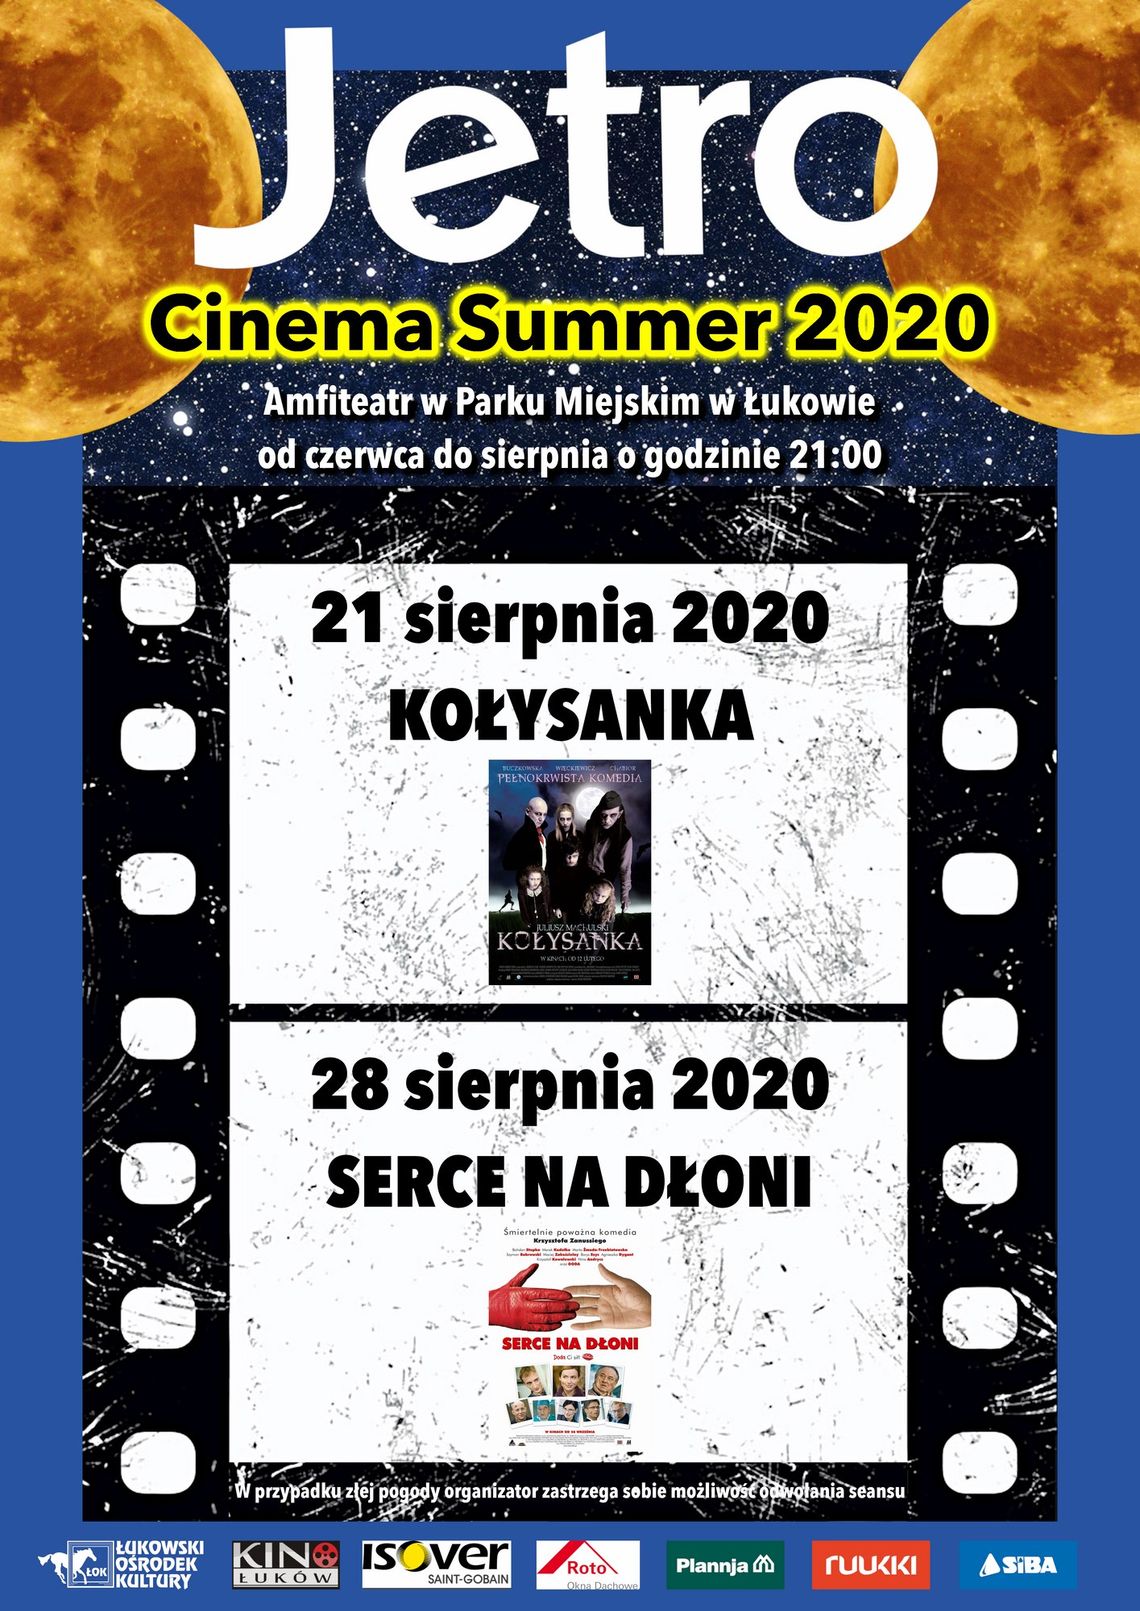 JETRO CINEMA SUMMER 2020 /21-28 sierpnia 2020